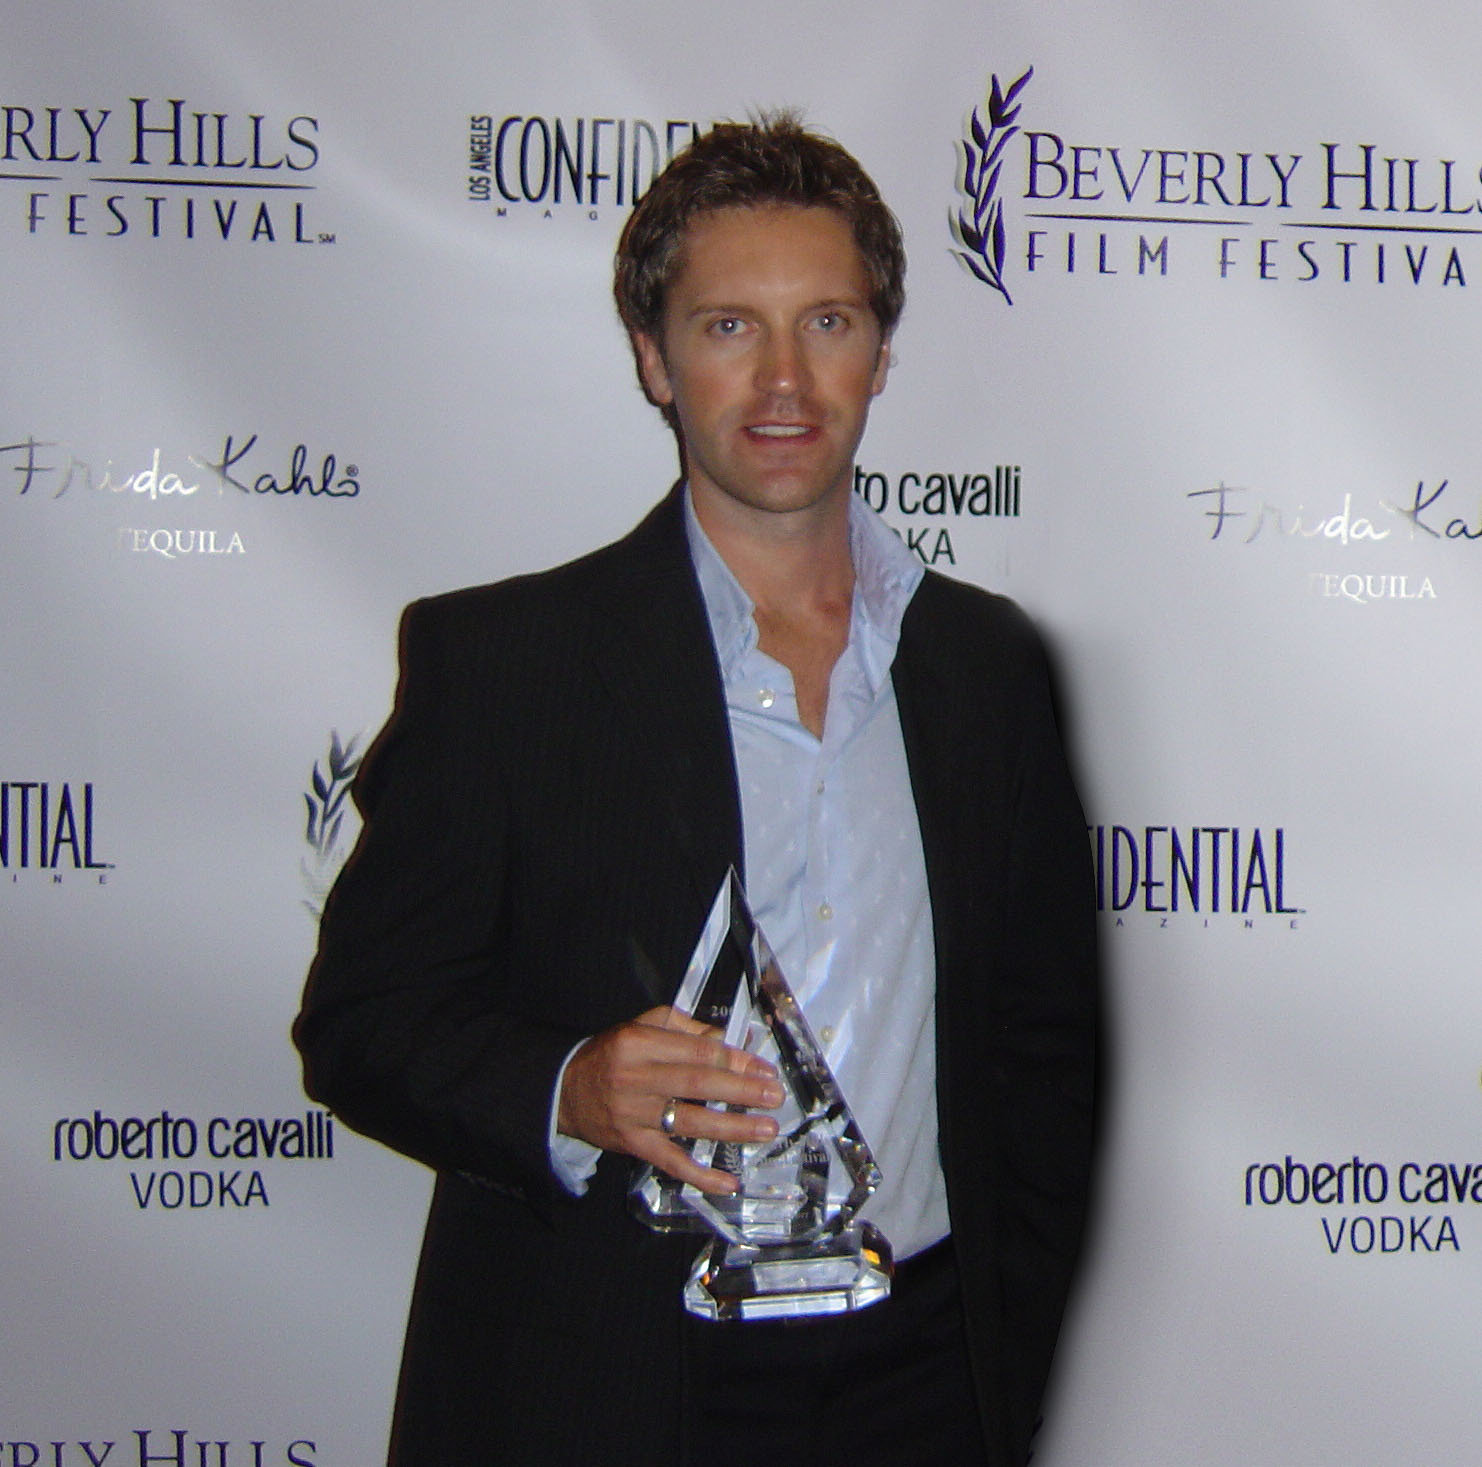 Galvin Scott Davis - 2 Awards at the Beverly Hills Film Festival